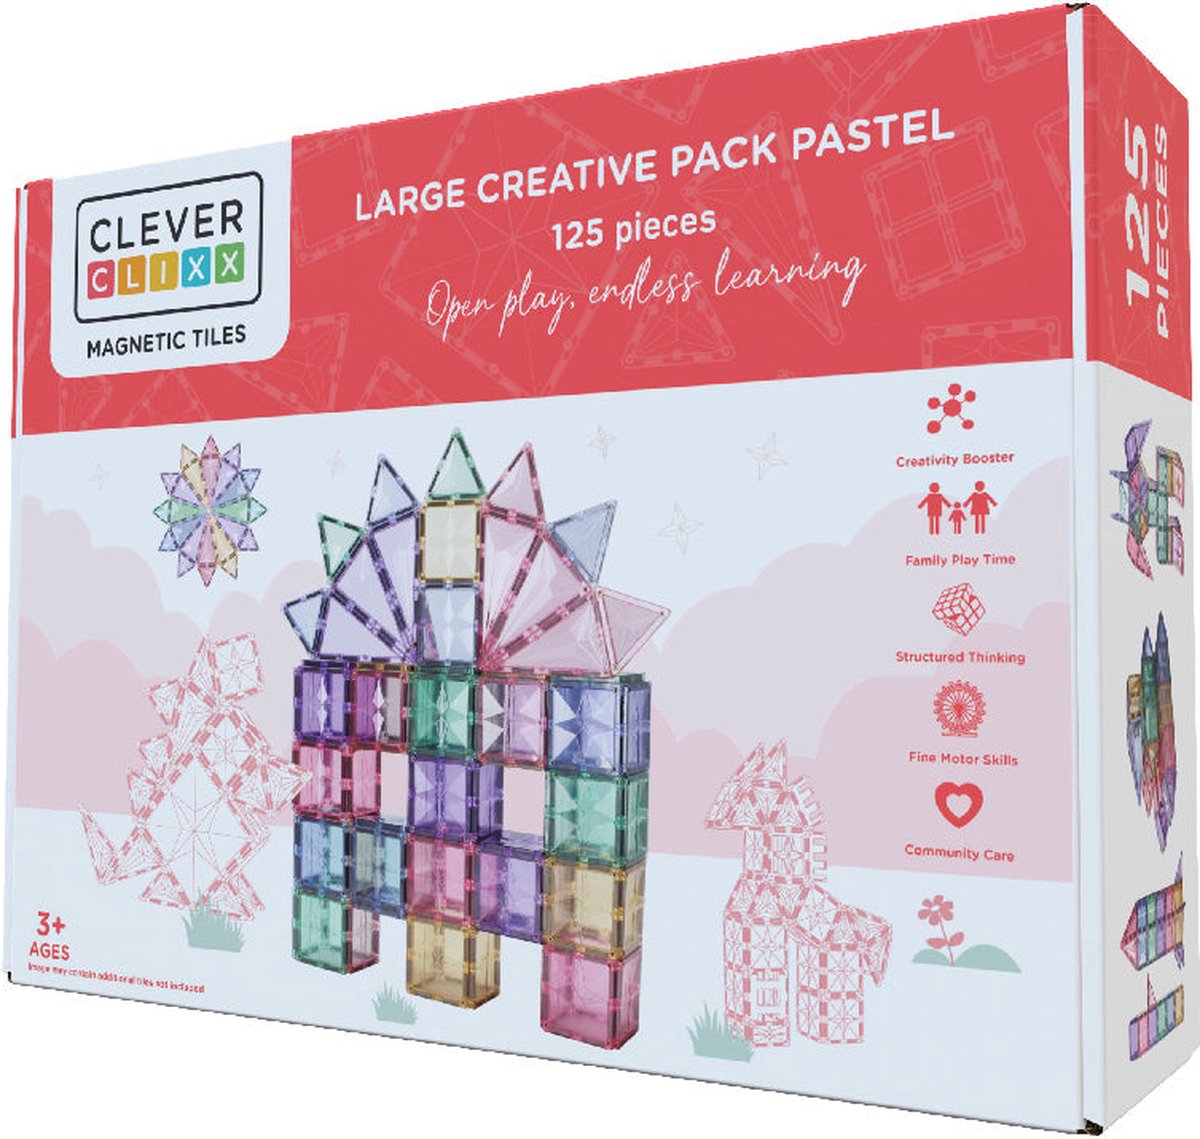 Cleverclixx Magnetisch Speelgoed | Large Creative Pack Pastel | 125 Stuks | Speelgoed 3 jaar